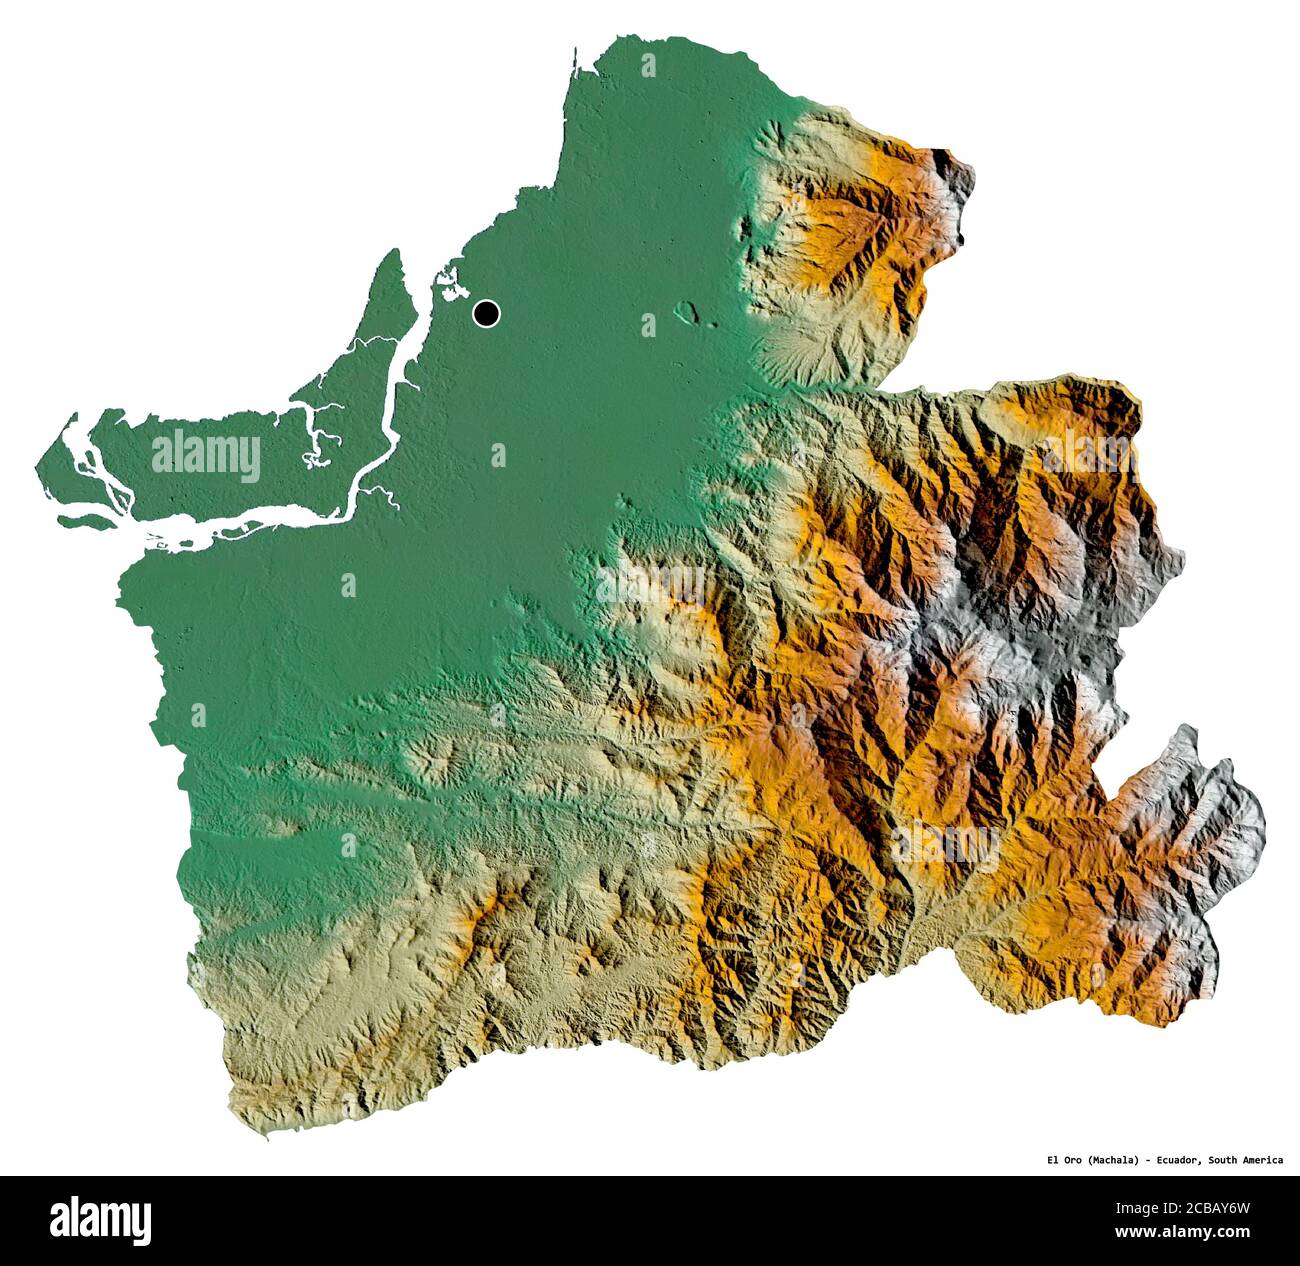 Forma de el Oro, provincia de Ecuador, con su capital aislada sobre fondo blanco. Mapa topográfico de relieve. Renderizado en 3D Foto de stock